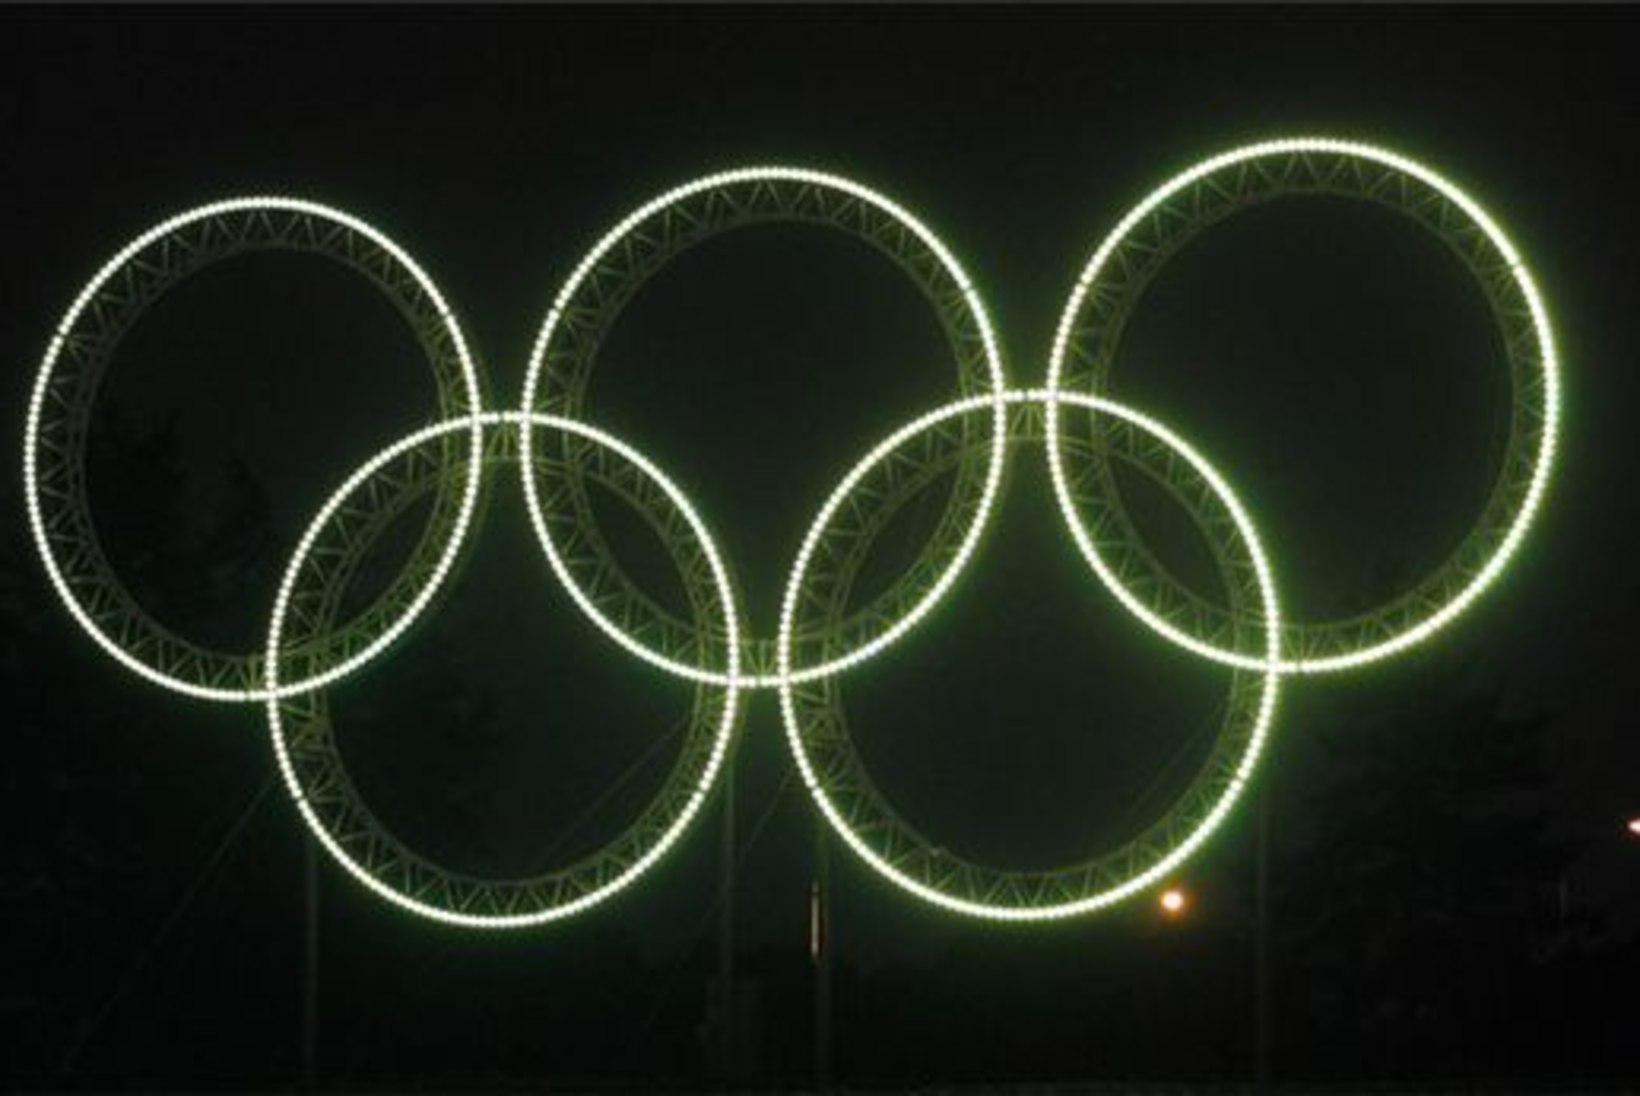 Olümpialasi sõidab toetama sadakond eestlast